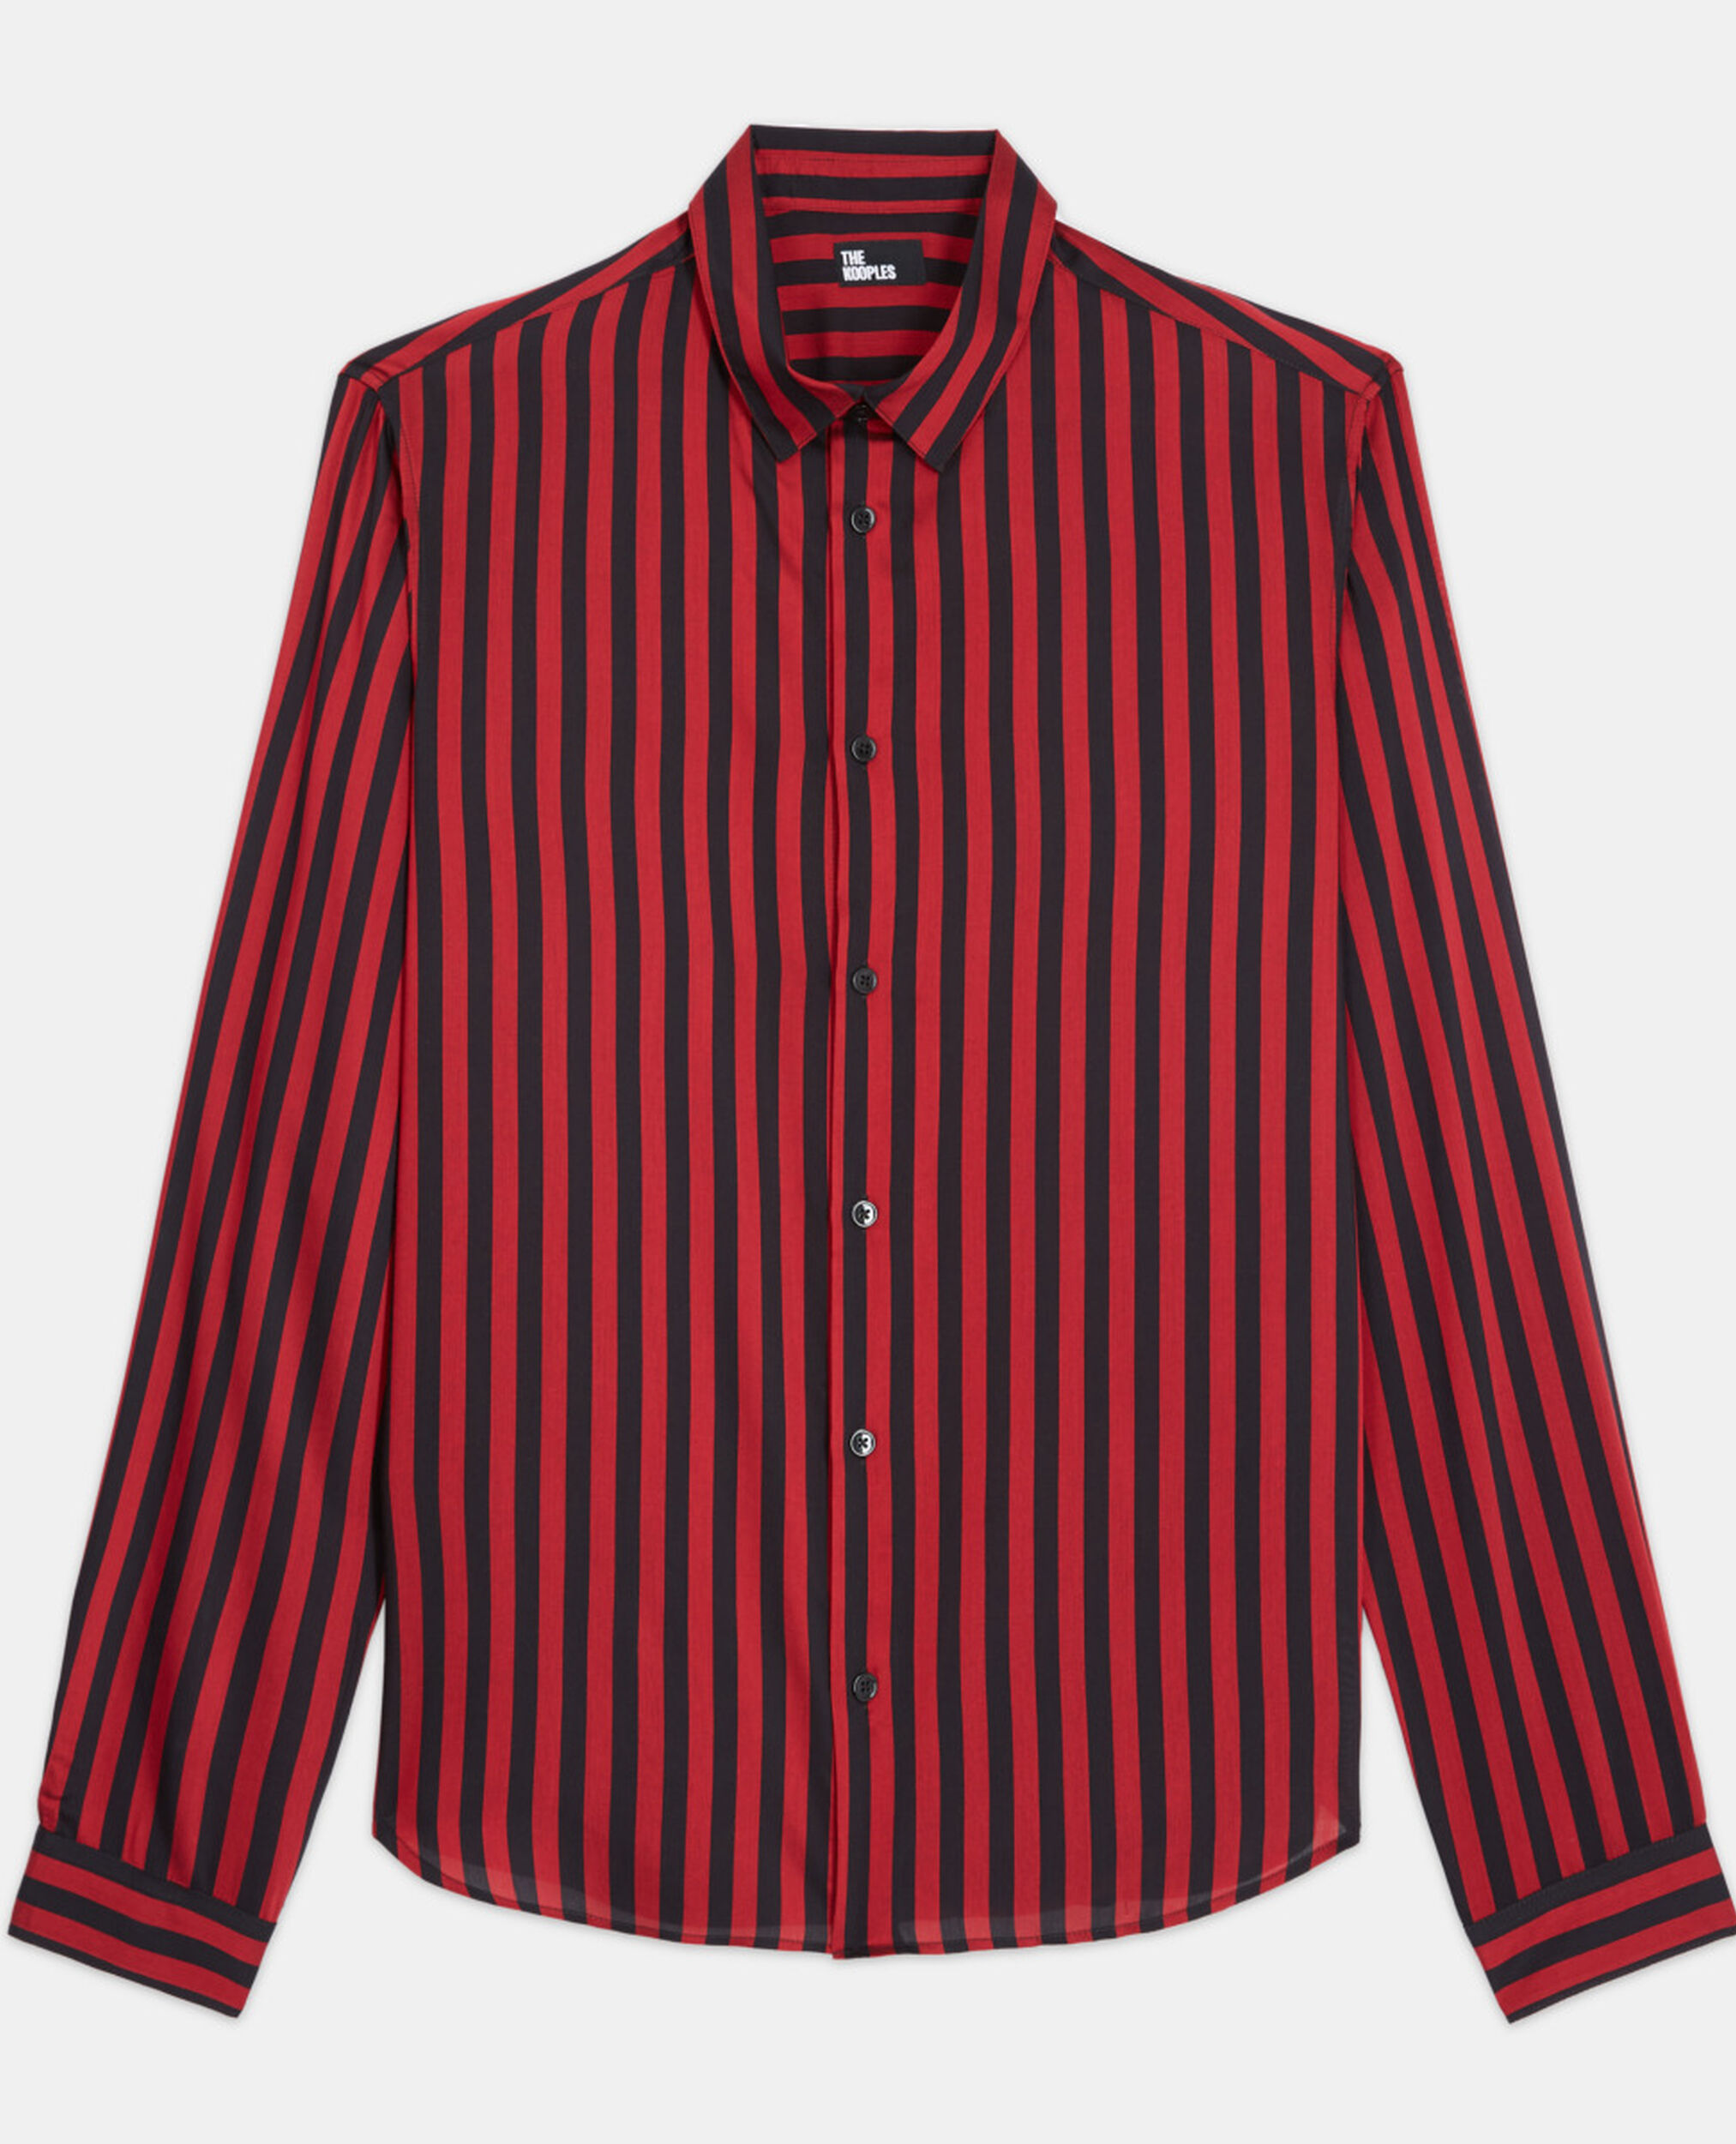 Camisa rayas con cuello clásico, RED / BLACK, hi-res image number null